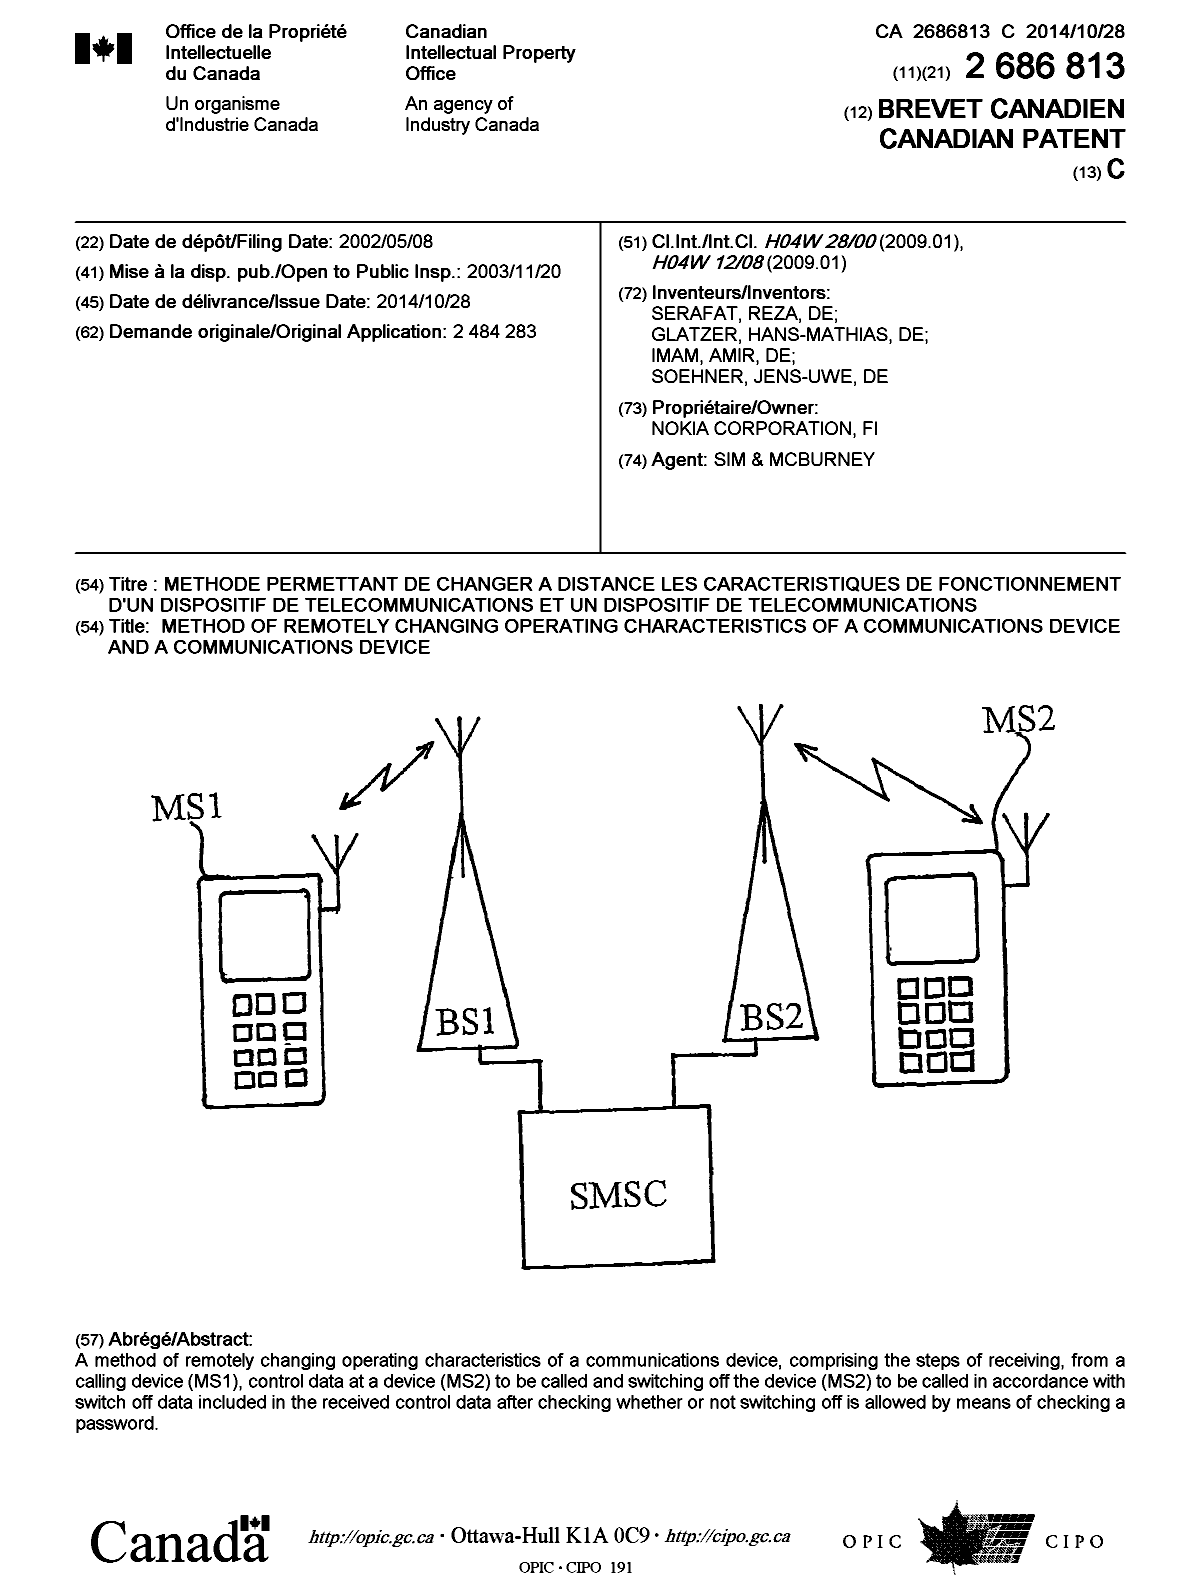 Document de brevet canadien 2686813. Page couverture 20140930. Image 1 de 1